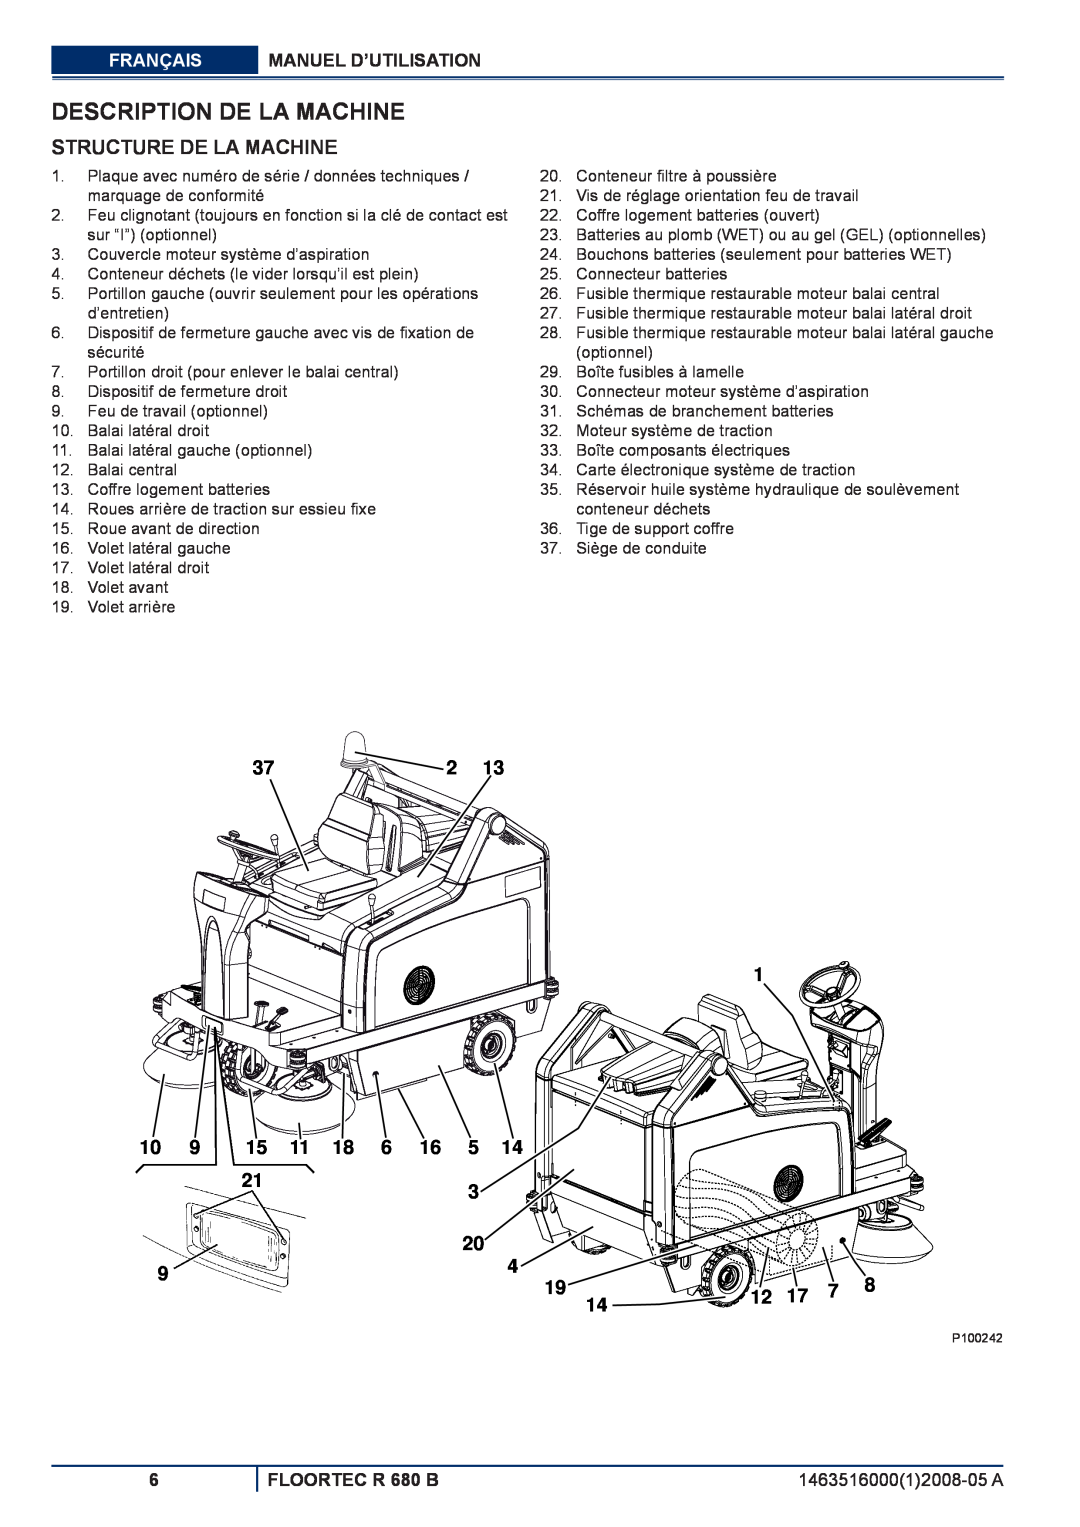 Nilfisk-ALTO R 680 B manuel dutilisation Description De La Machine, Structure De La Machine 